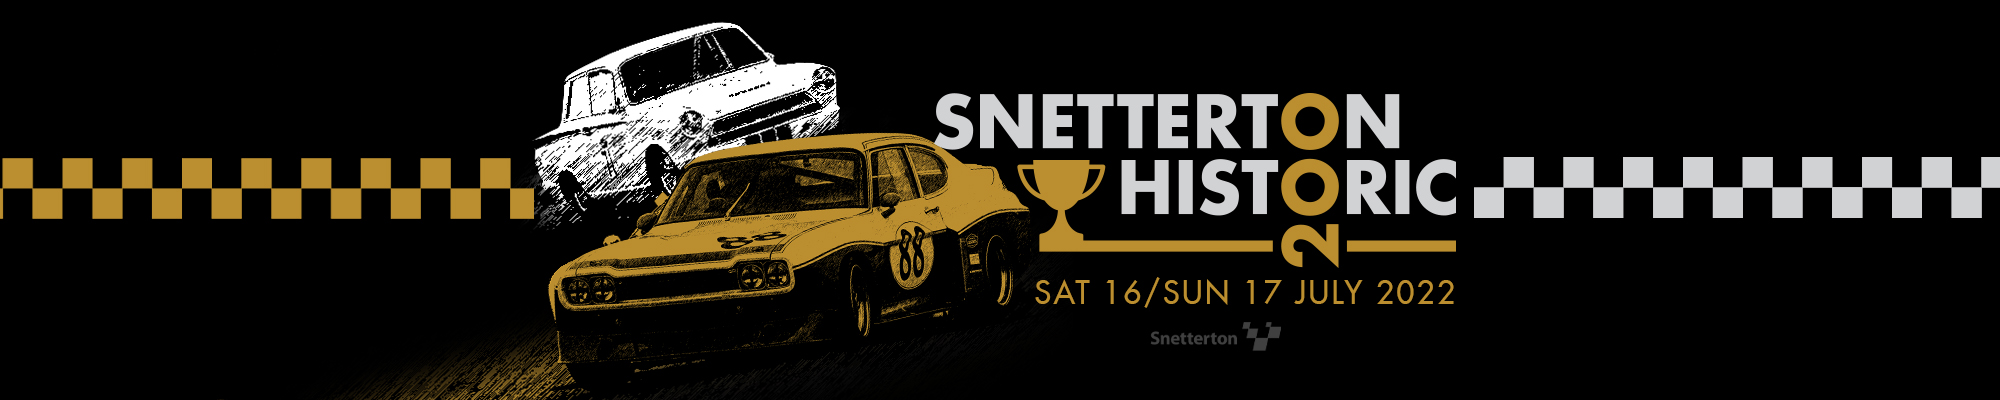 Snetterton Historic 200